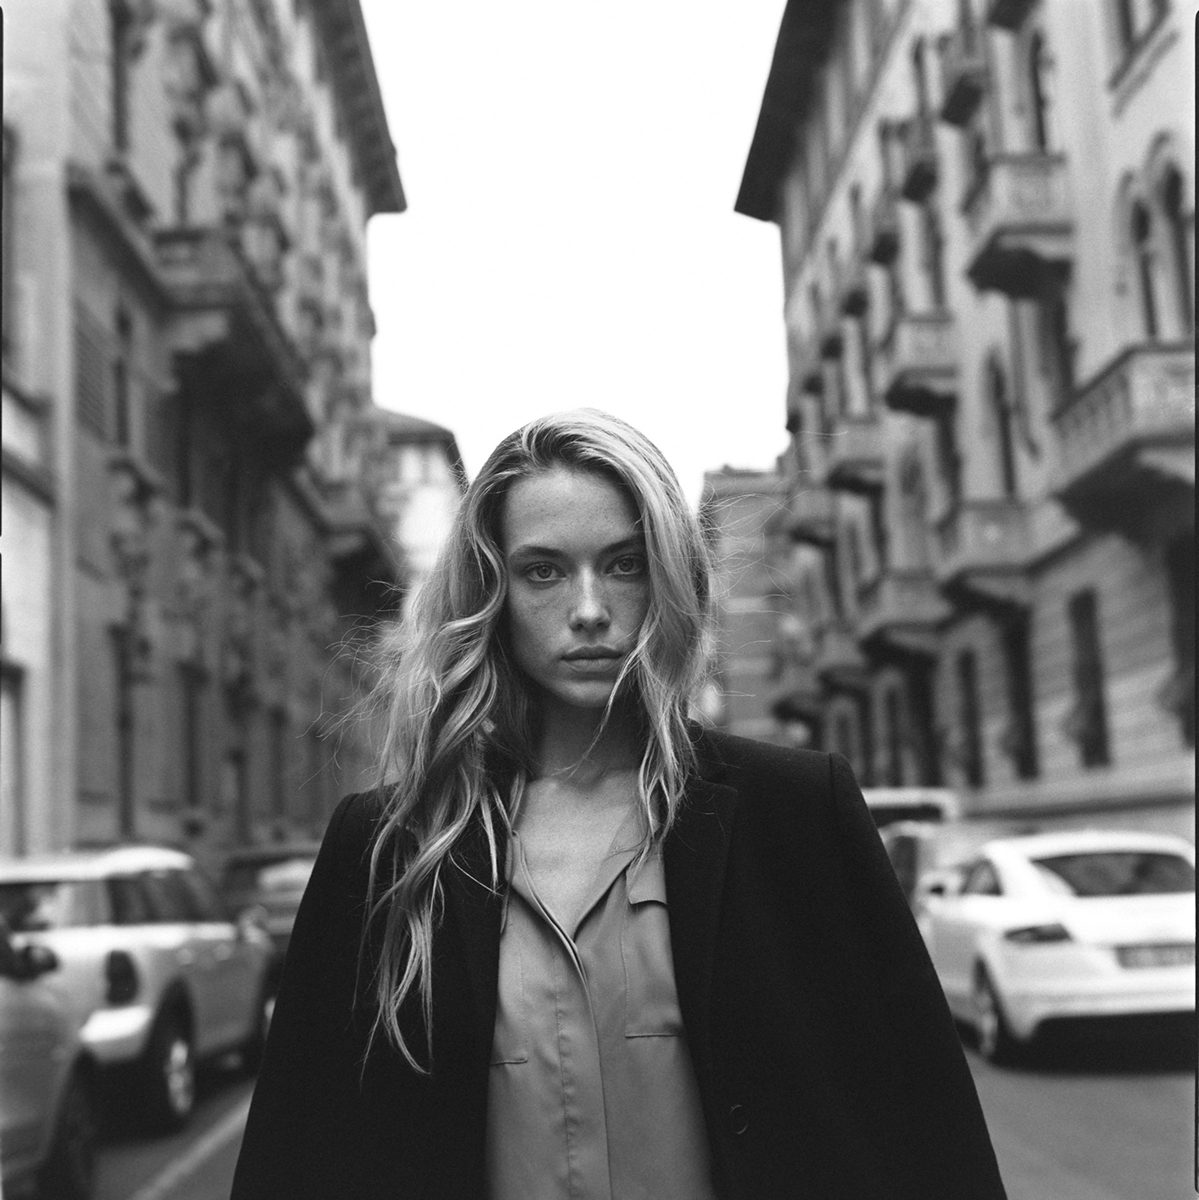 Portrait of a woman in a street